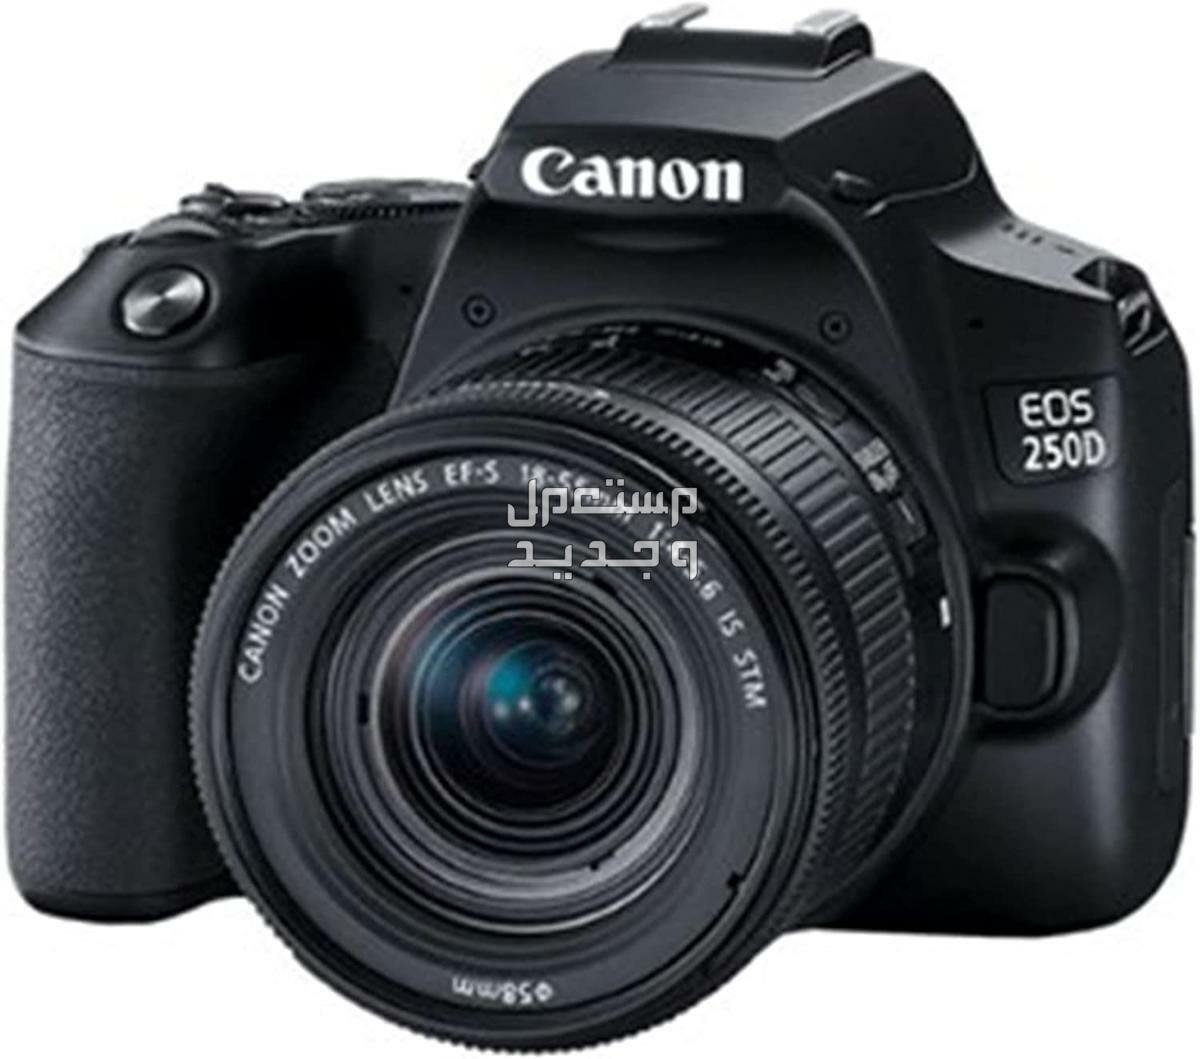 سعر ومميزات ومواصفات أرخص 5 كاميرات تصوير من كانون في اليَمَن كاميرا Canon EOS 250D